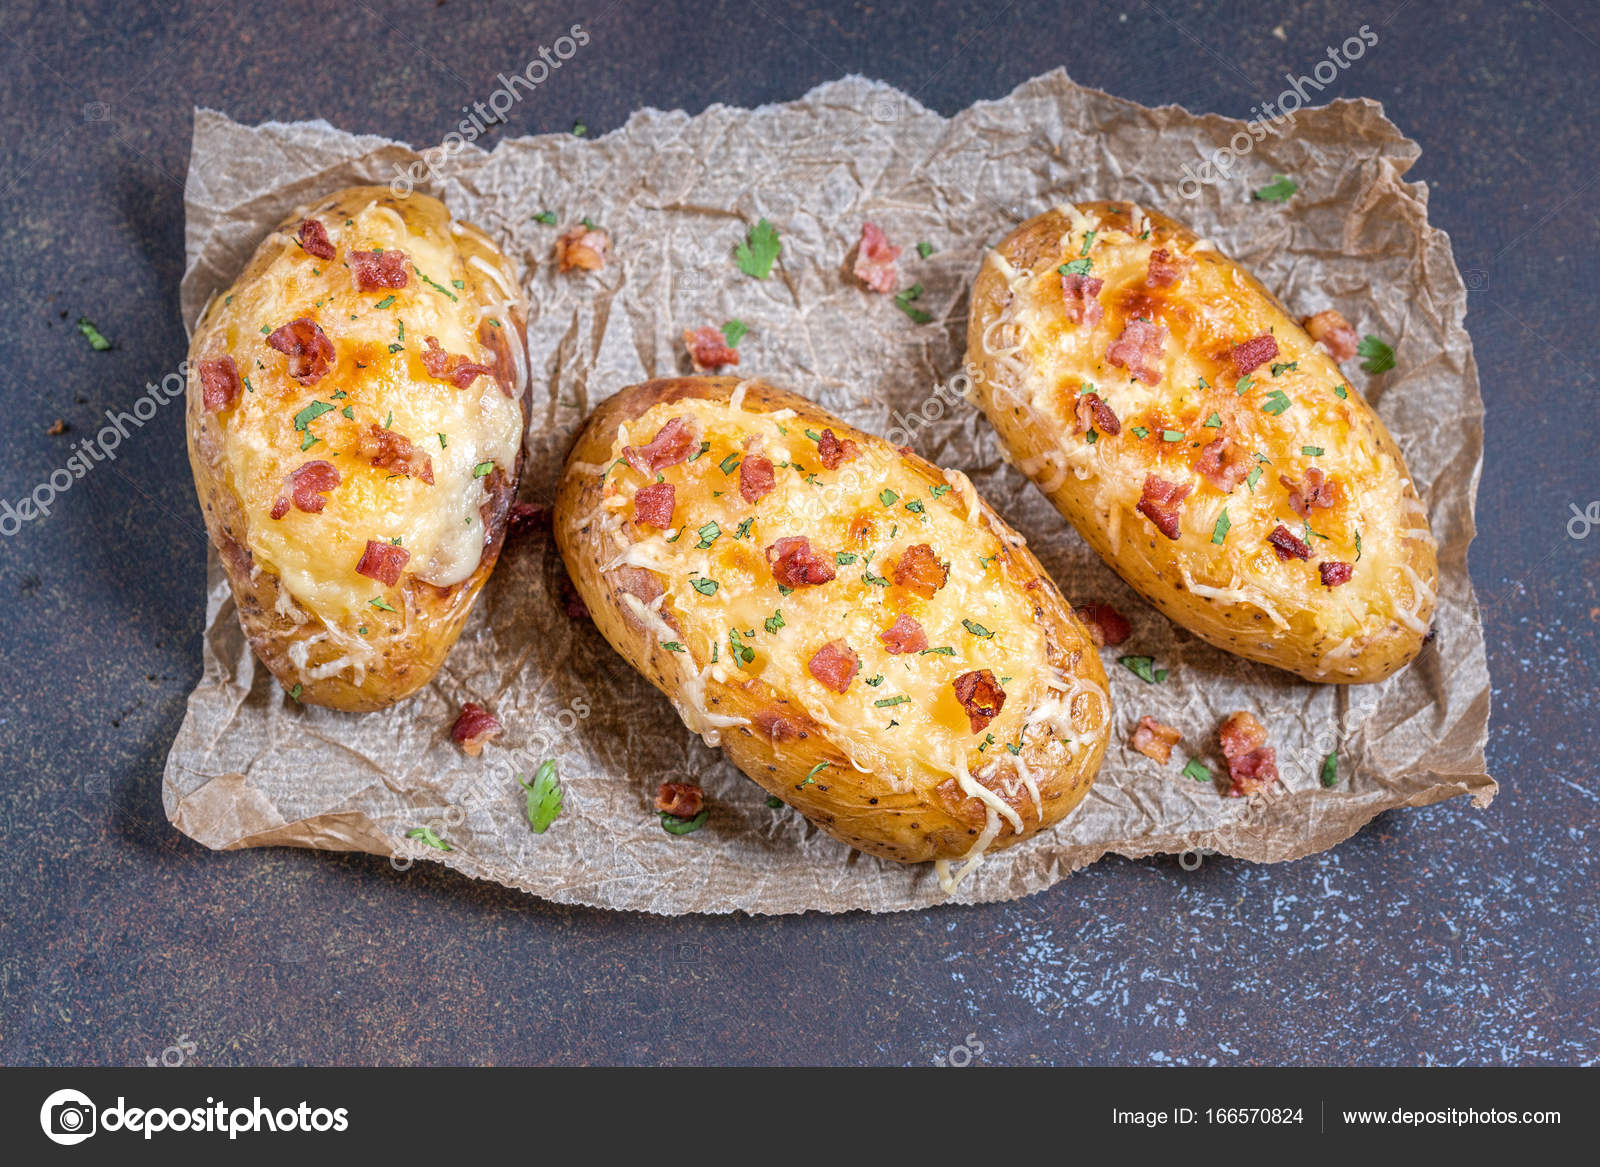 Gebackene Kartoffeln mit Speck, Käse und Zwiebeln - Stockfotografie ...